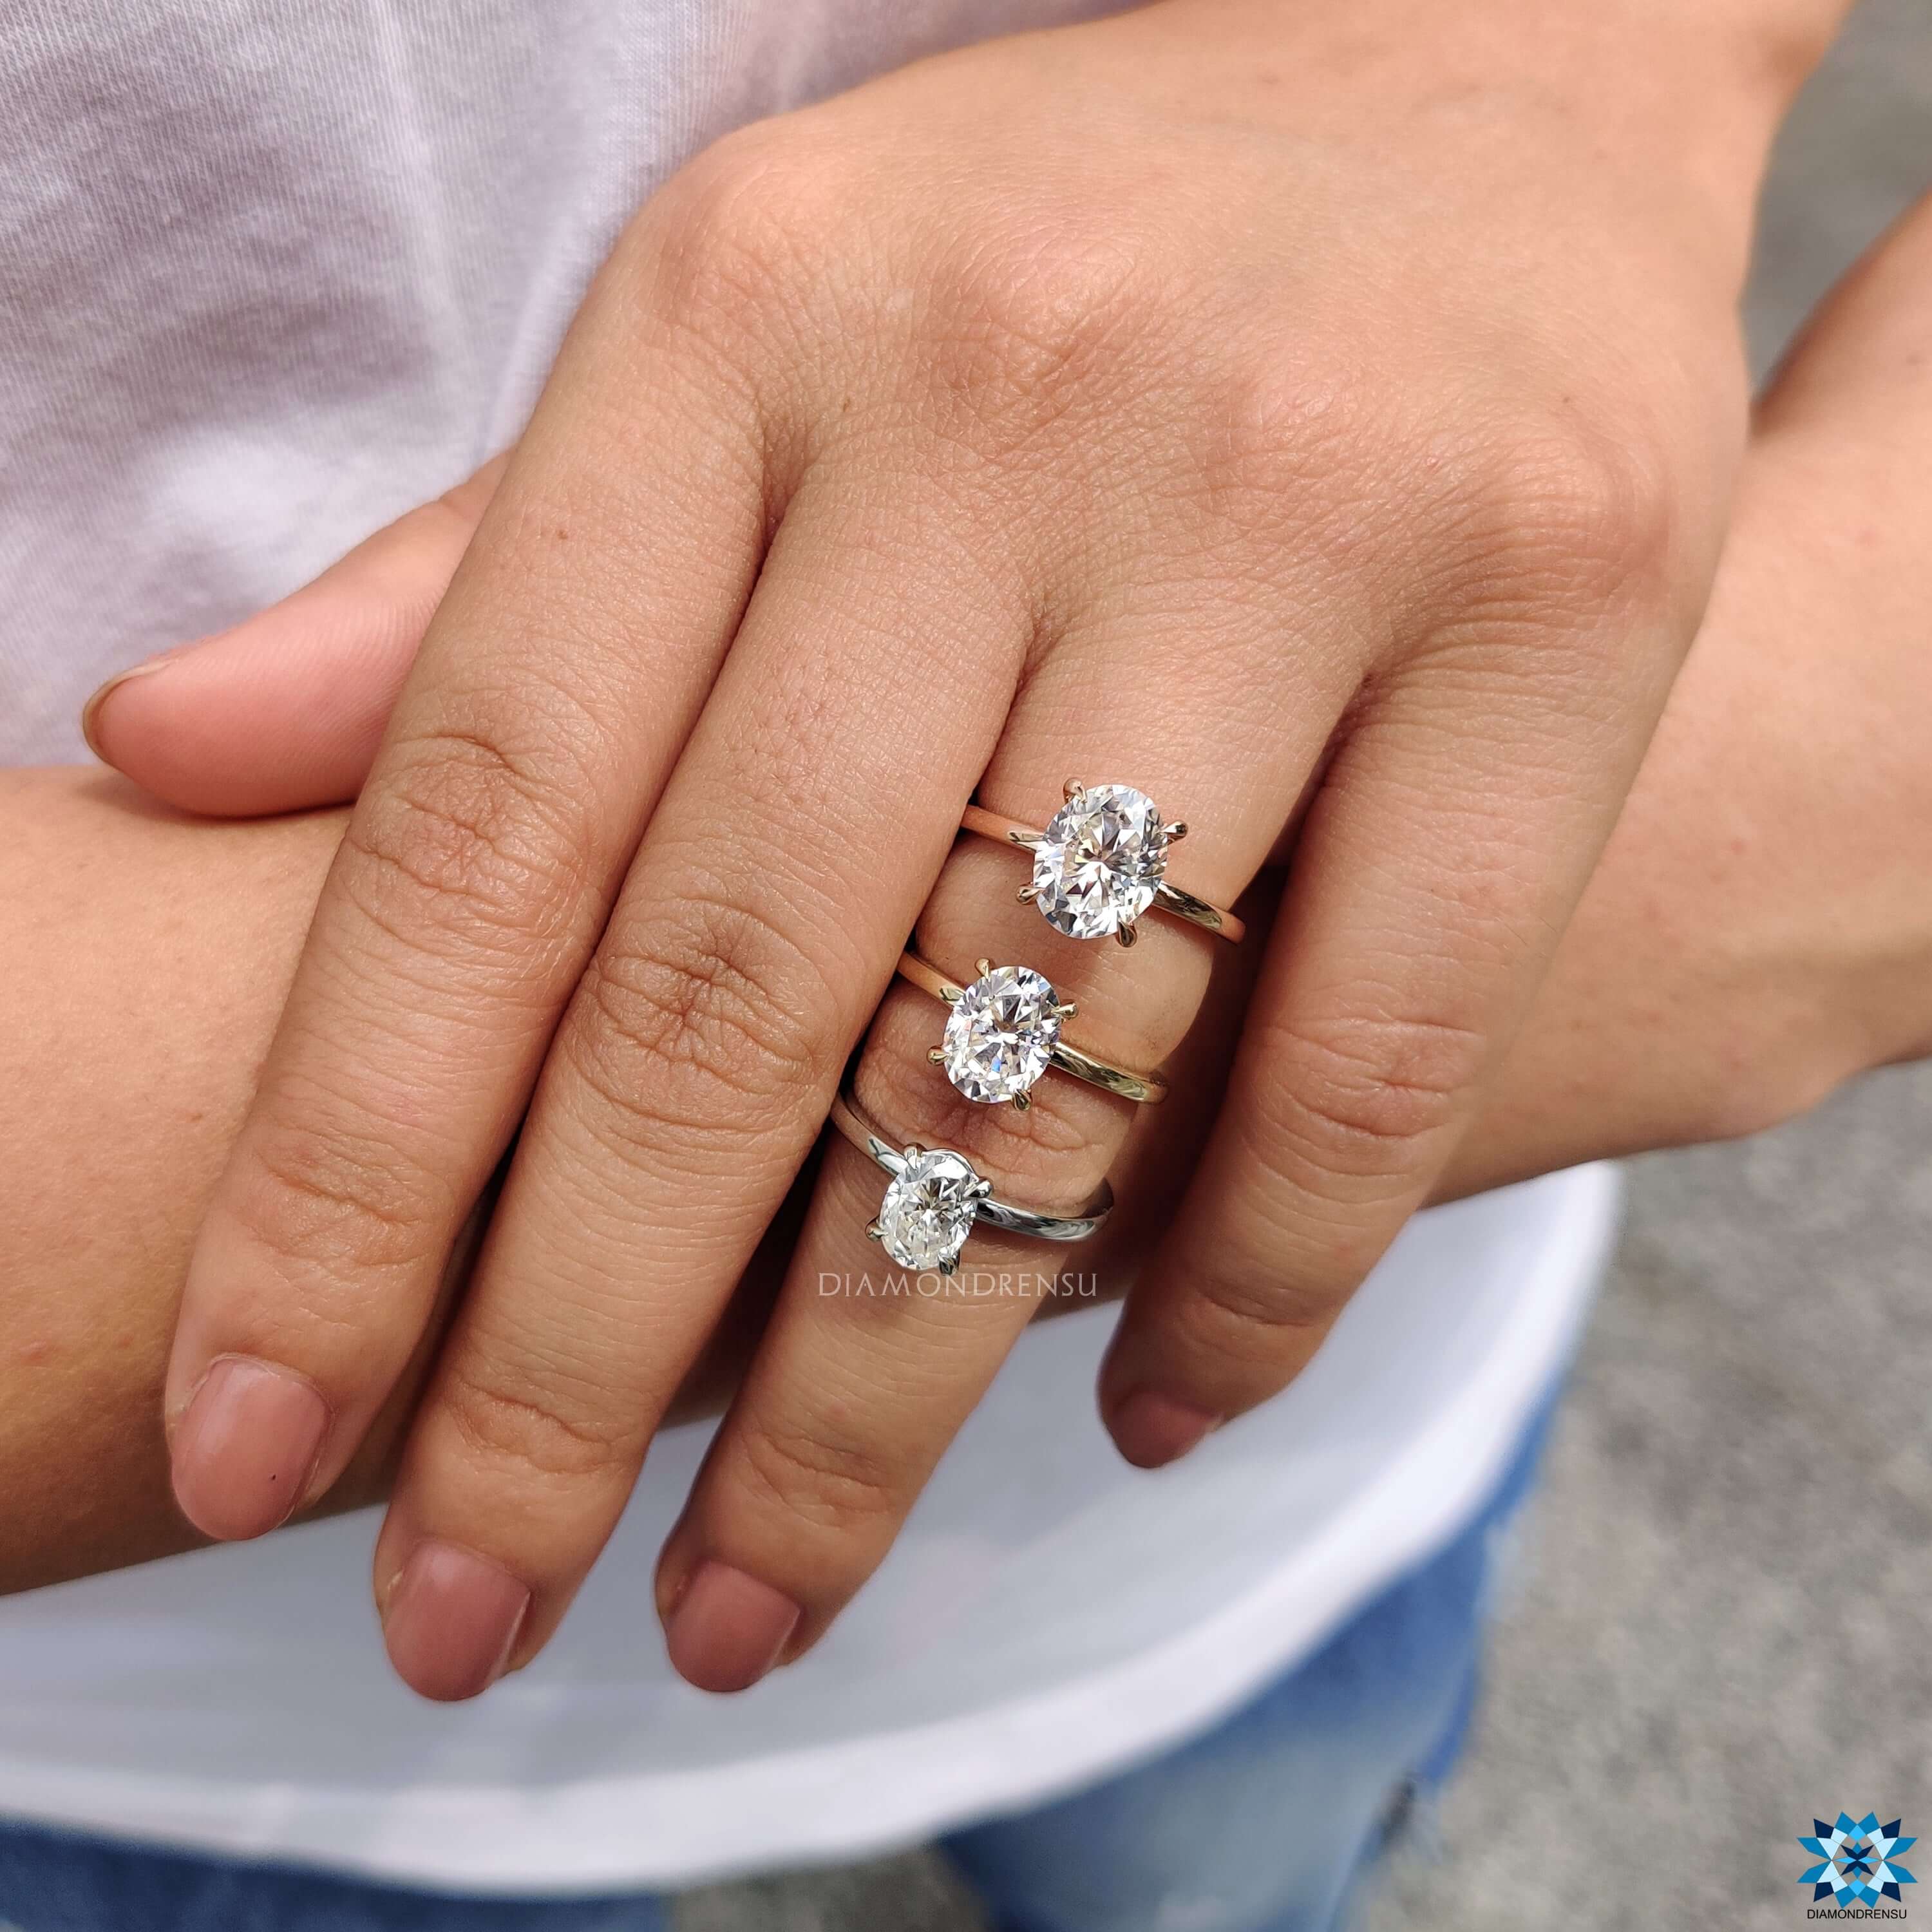 anniversary gift rings - diamondrensu